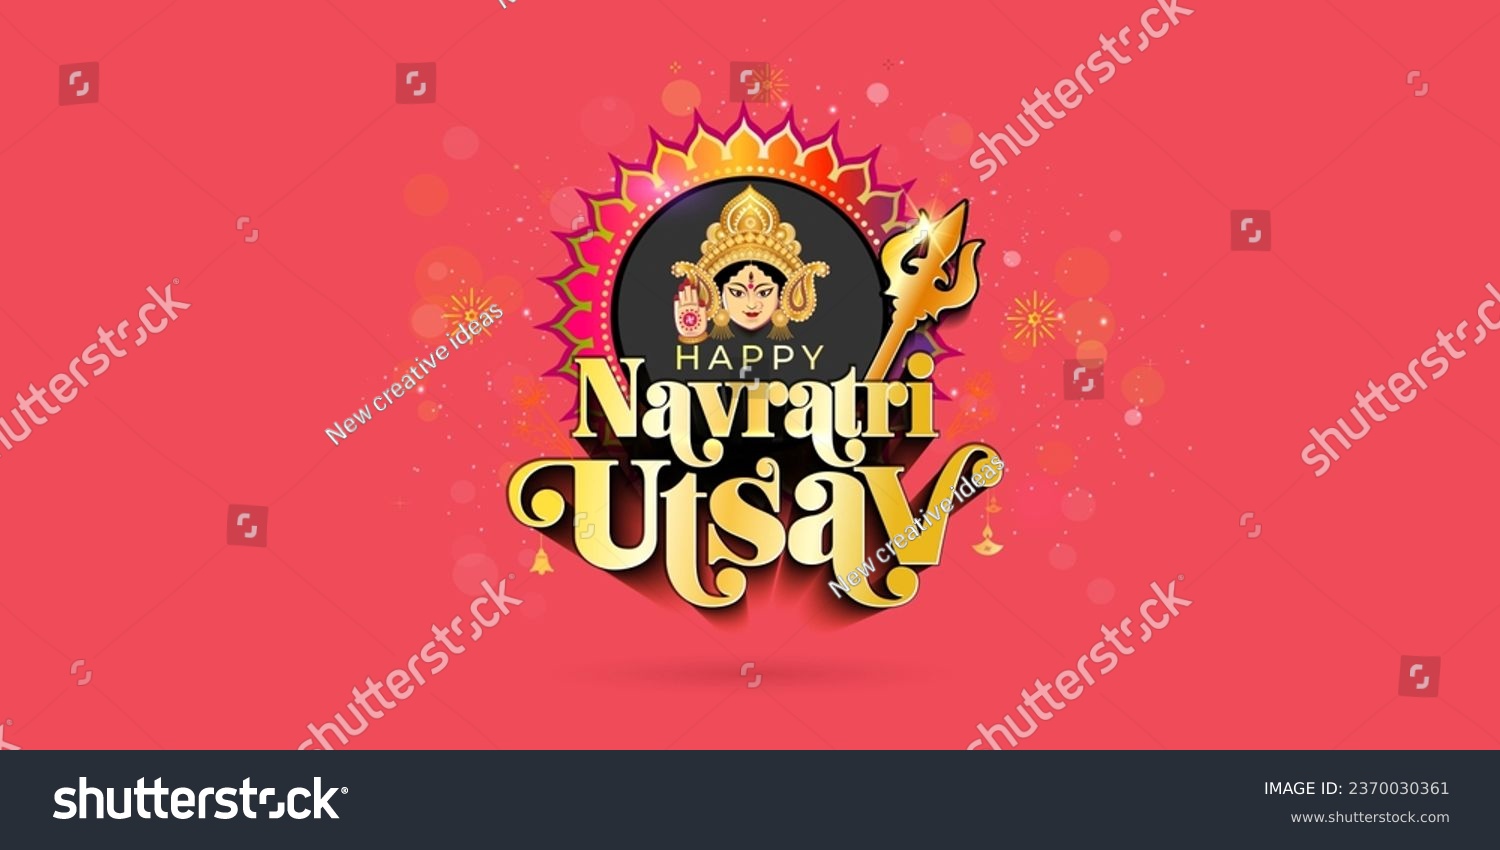 SVG of Godess Durga with Happy Navratri utsav typography on red festive background. svg